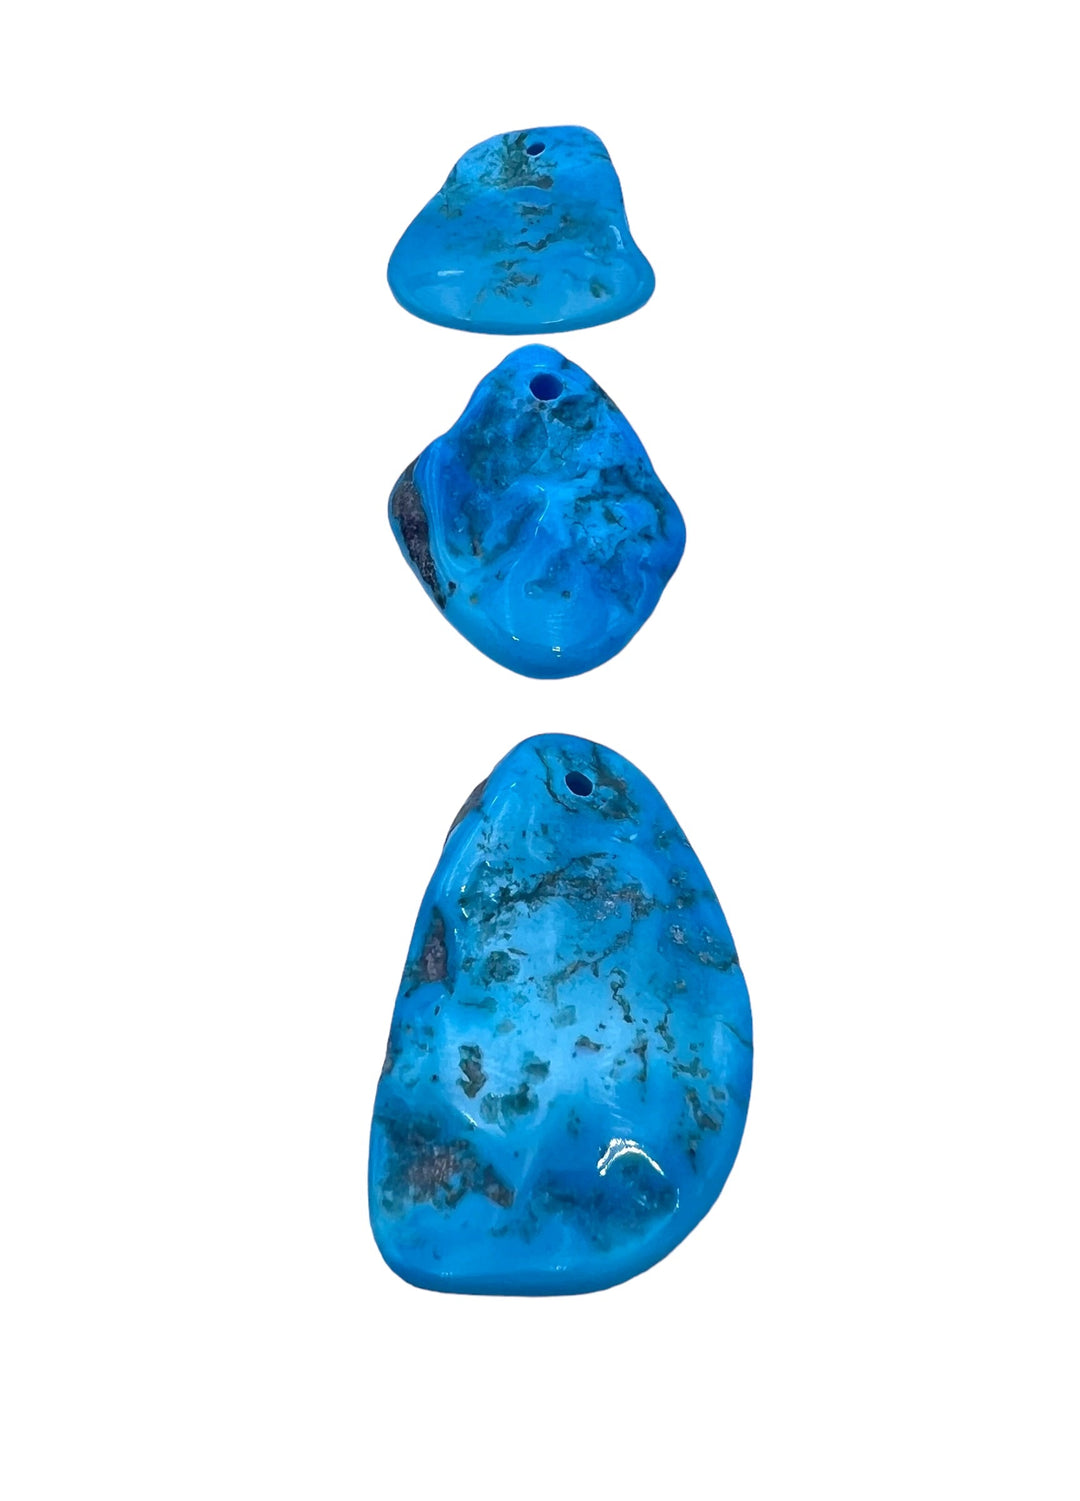 Sleeping Beauty Turquoise Focal Pendant Bead (Select One